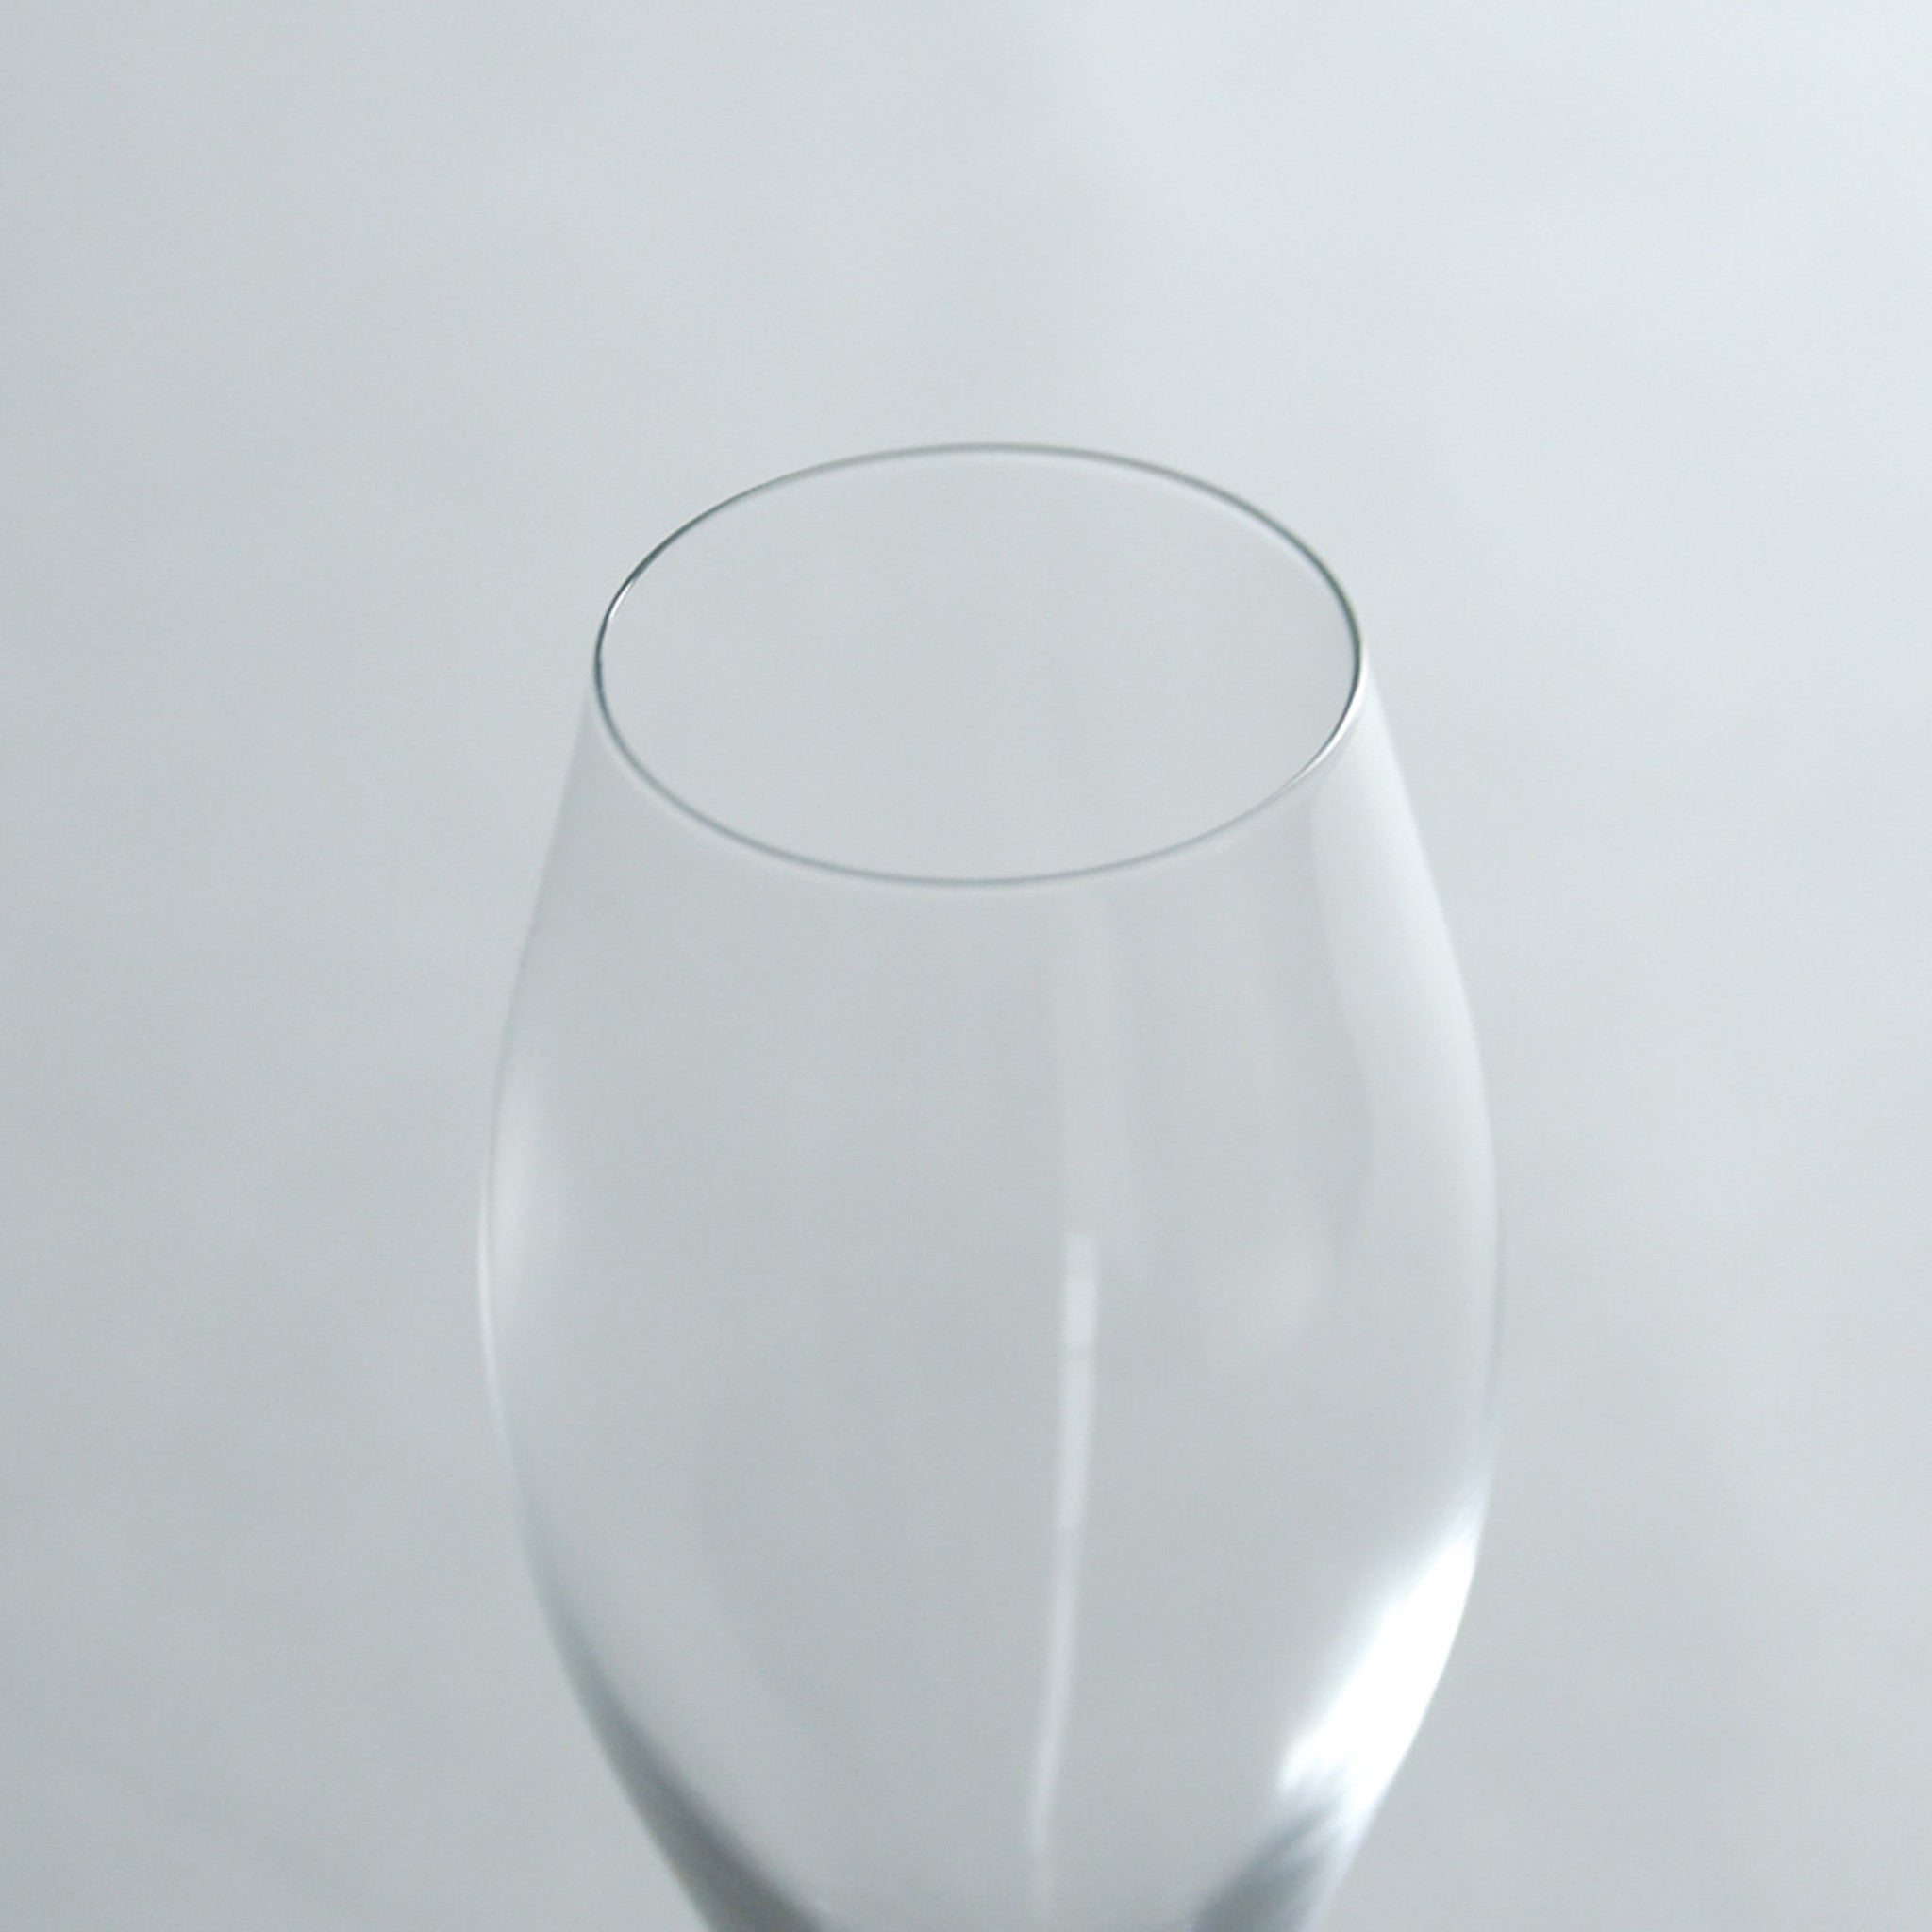 ガラス ワイングラス ピッコロ 6oz フルート KG14090お祝い プレゼント ガラス食器 雑貨 おしゃれ かわいい バー 酒用品 記念品